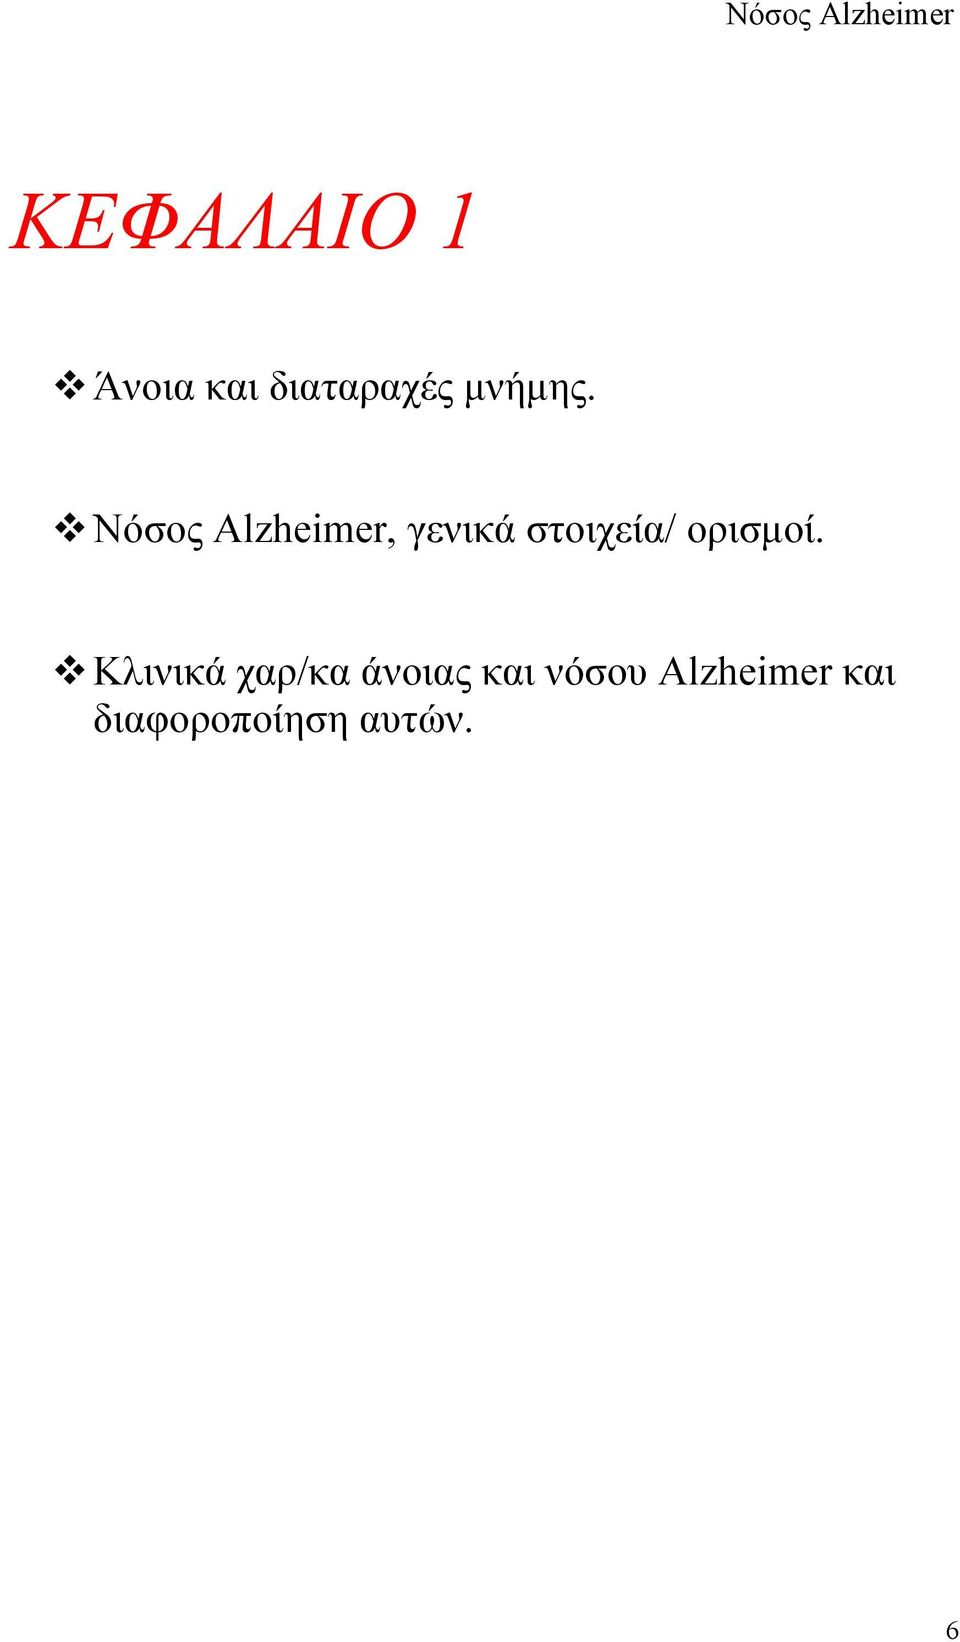 Νόσος Alzheimer, γενικά στοιχεία/